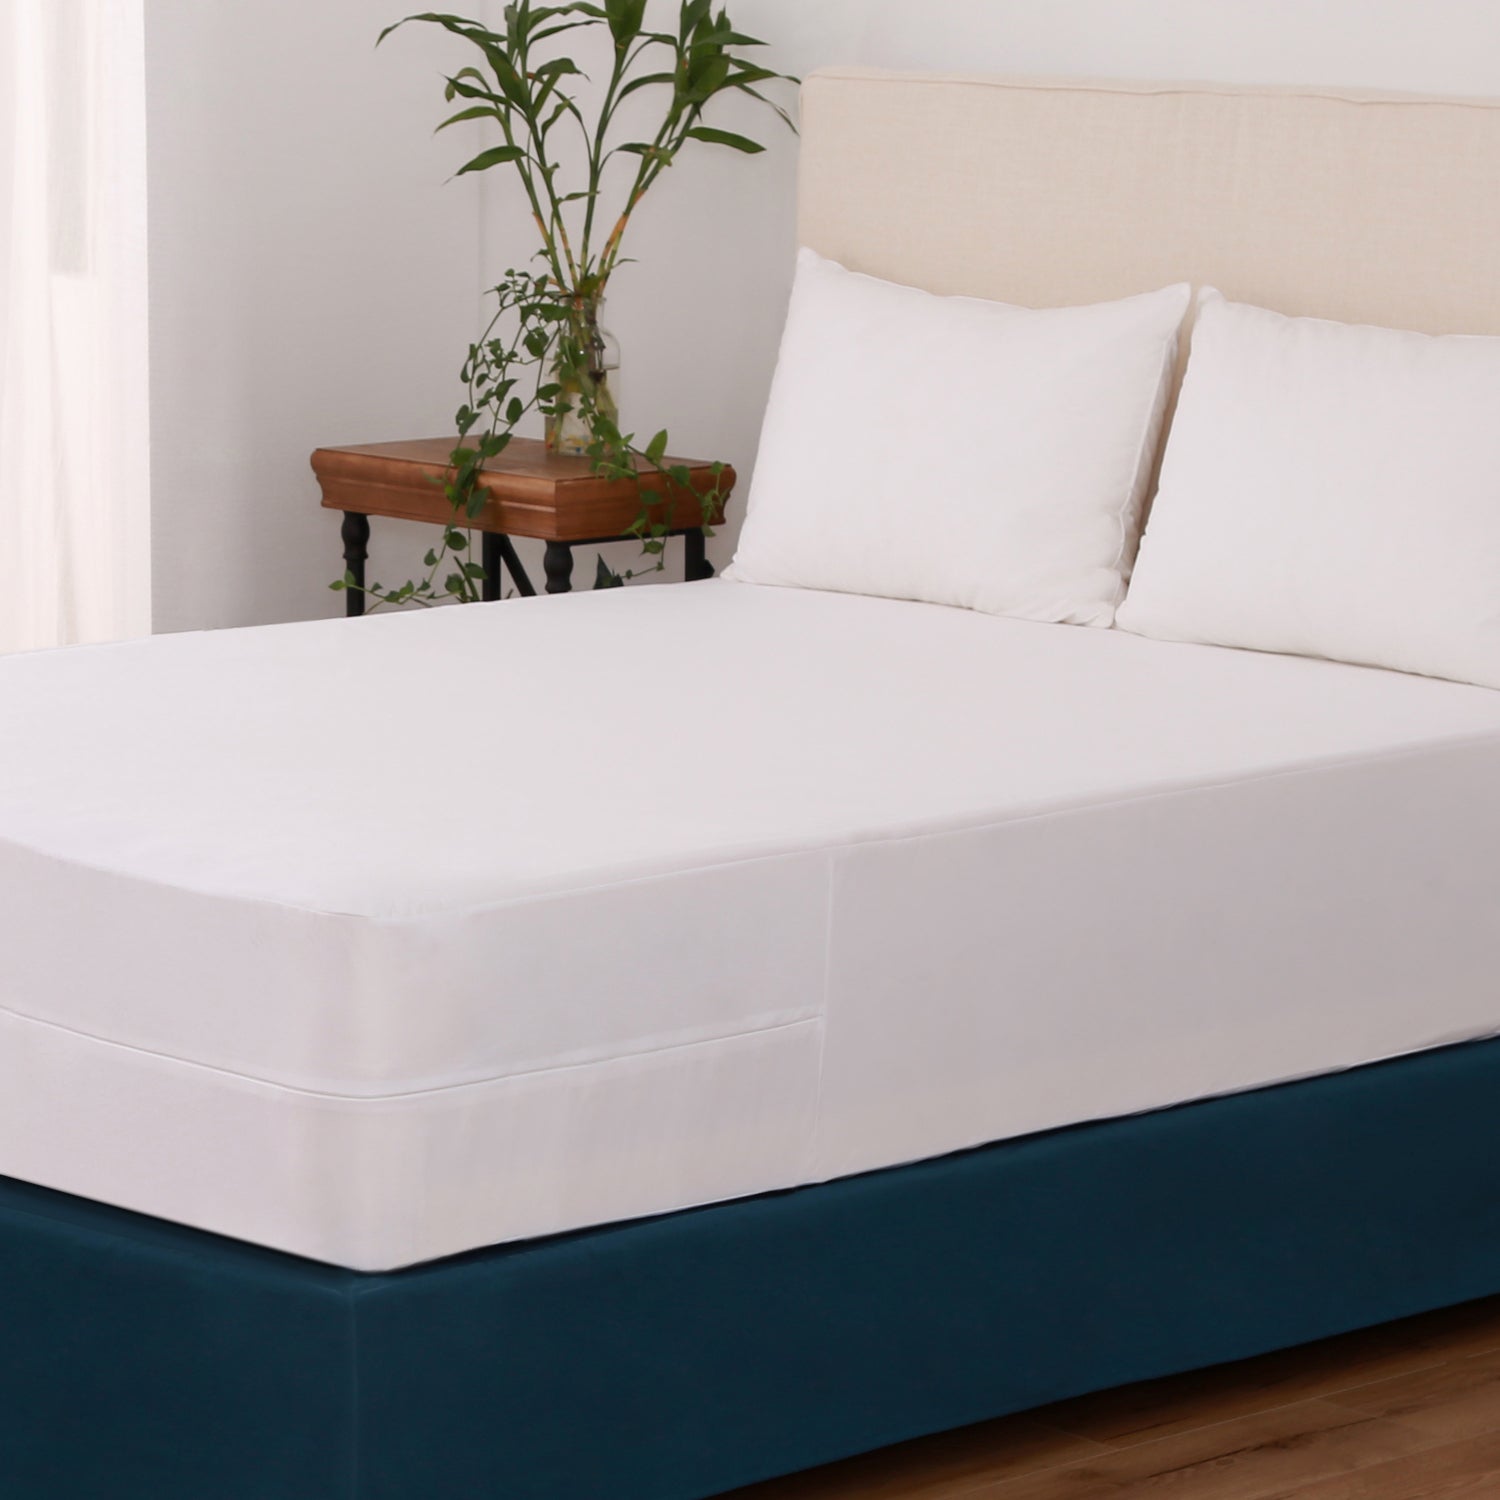 Bed bugs: Do mattress encasements help?